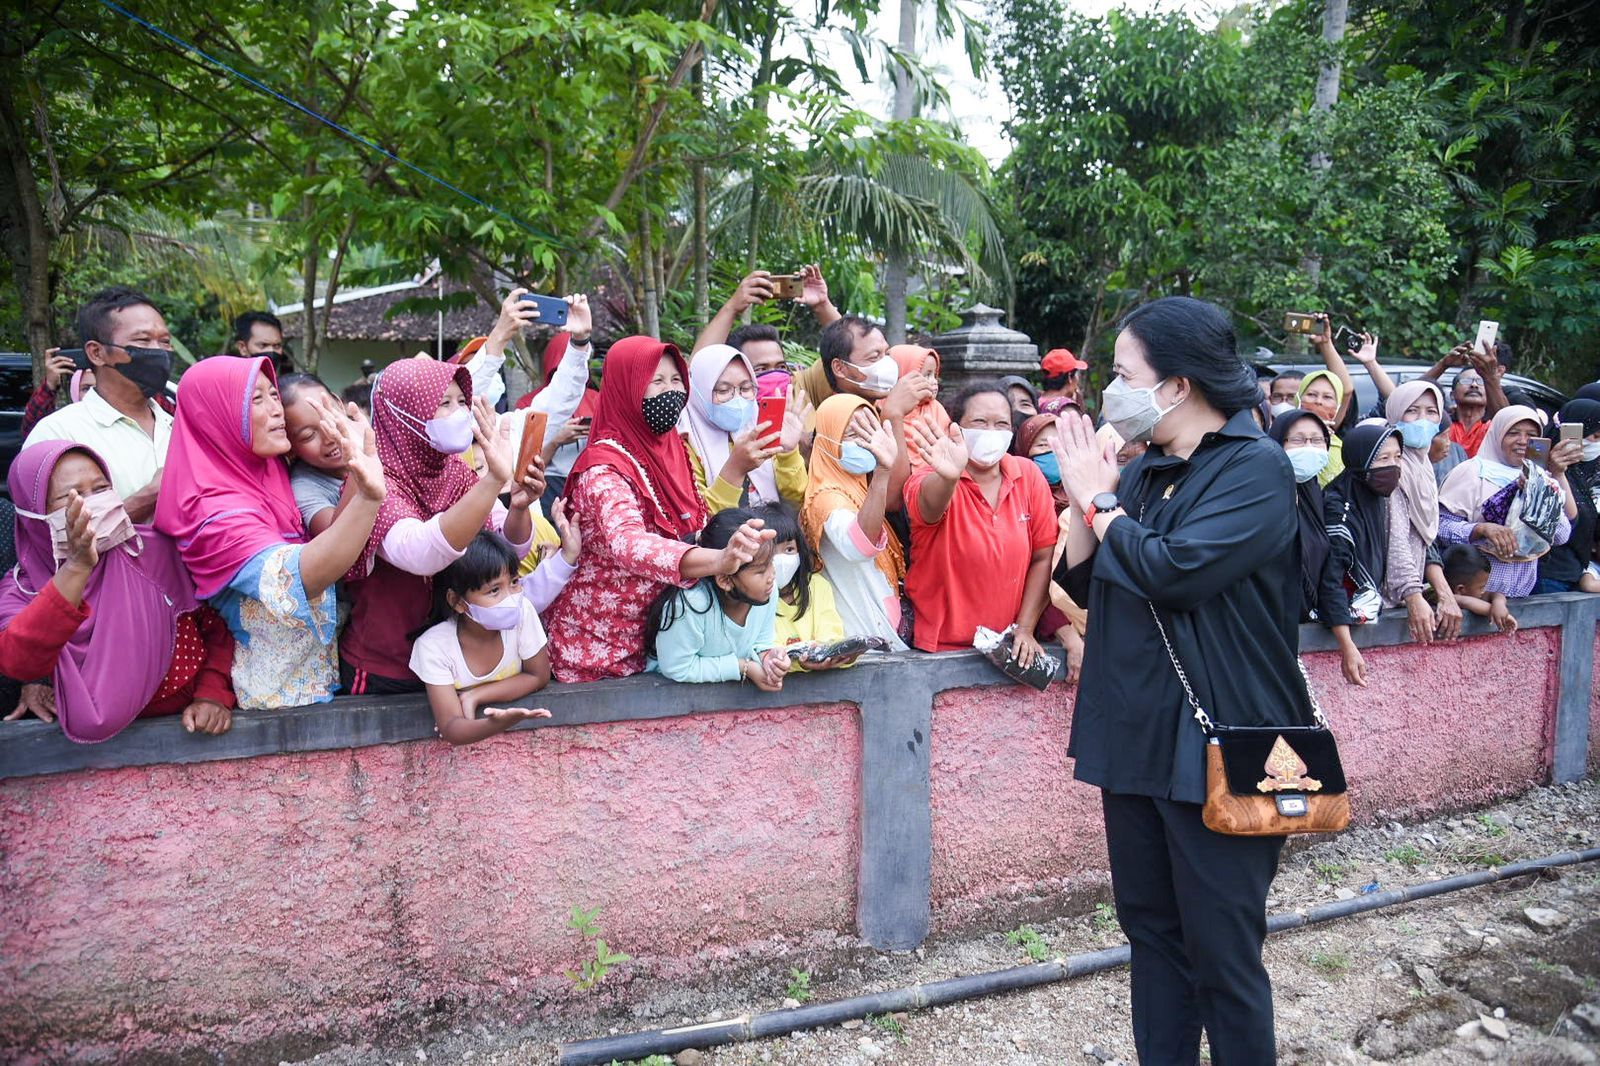 Masyarakat Desa Gendayakan, Kecamatan Paranggupito, Kabupaten Wonogiri menyambut kedatangan Ketua DPR RI Puan Maharani./DPR RI